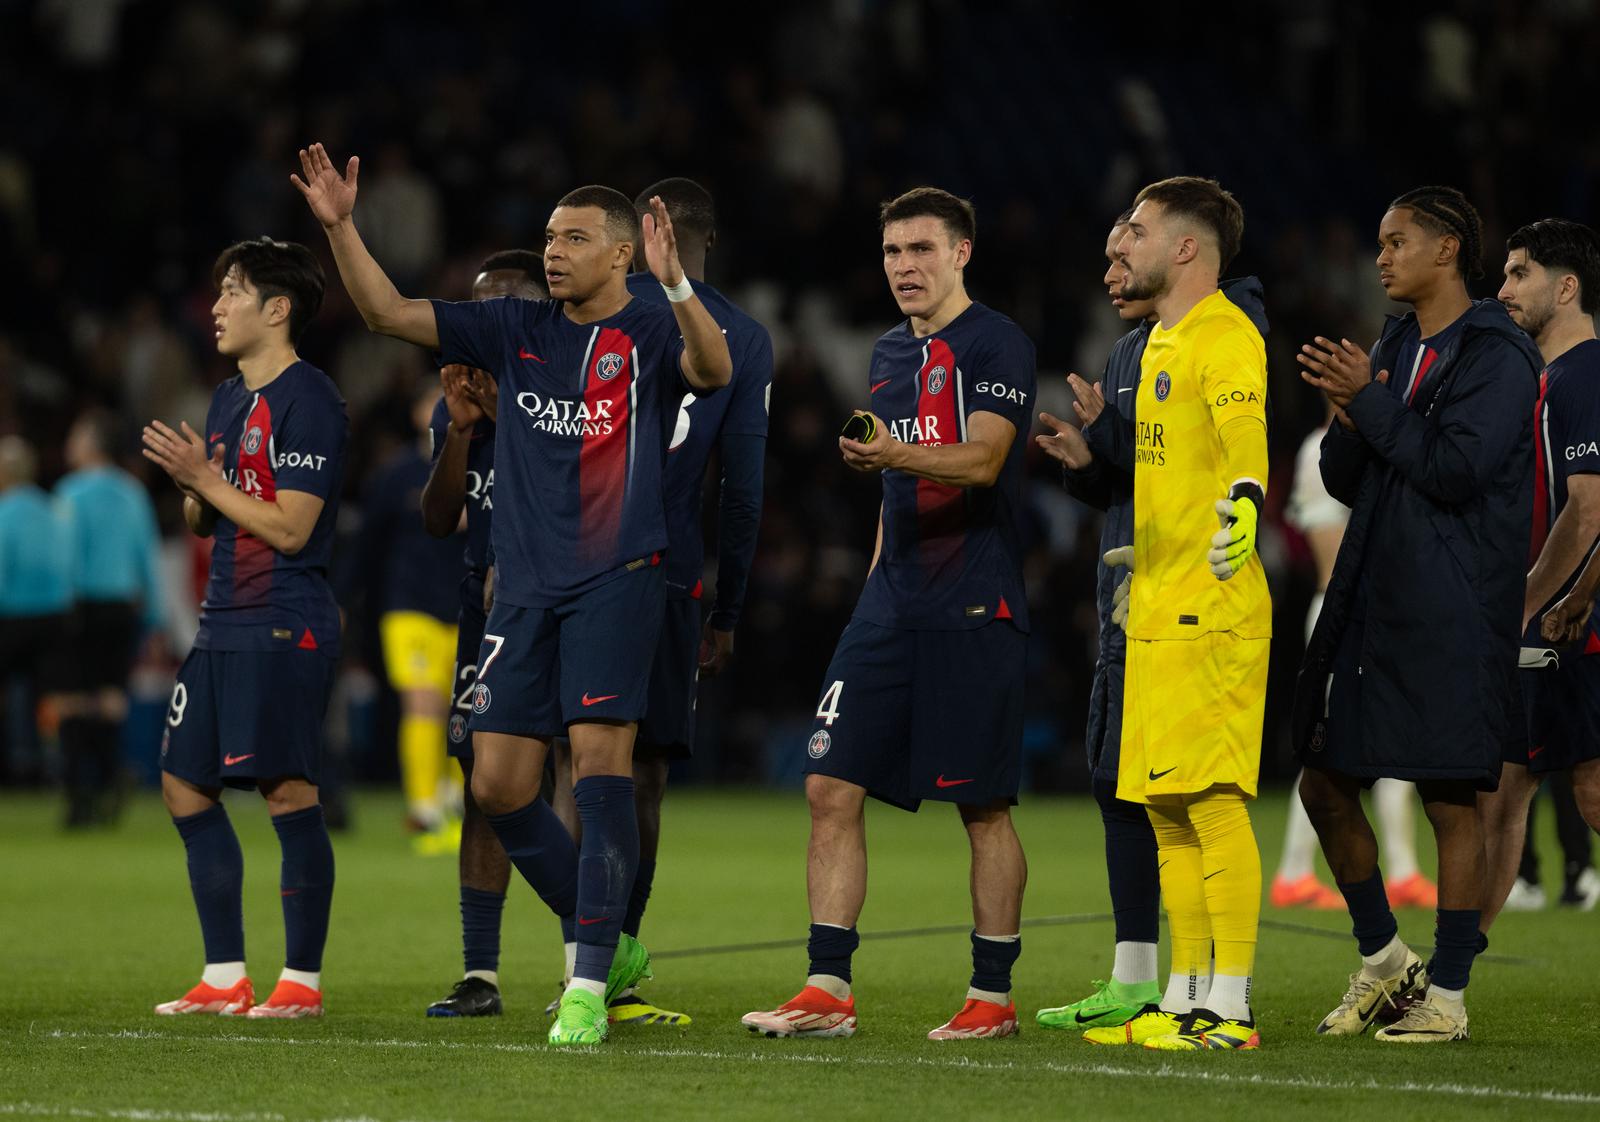 Liga prvaka: Borussia protiv Atletico Madrida, PSG u Parizu domaćin Barceloni